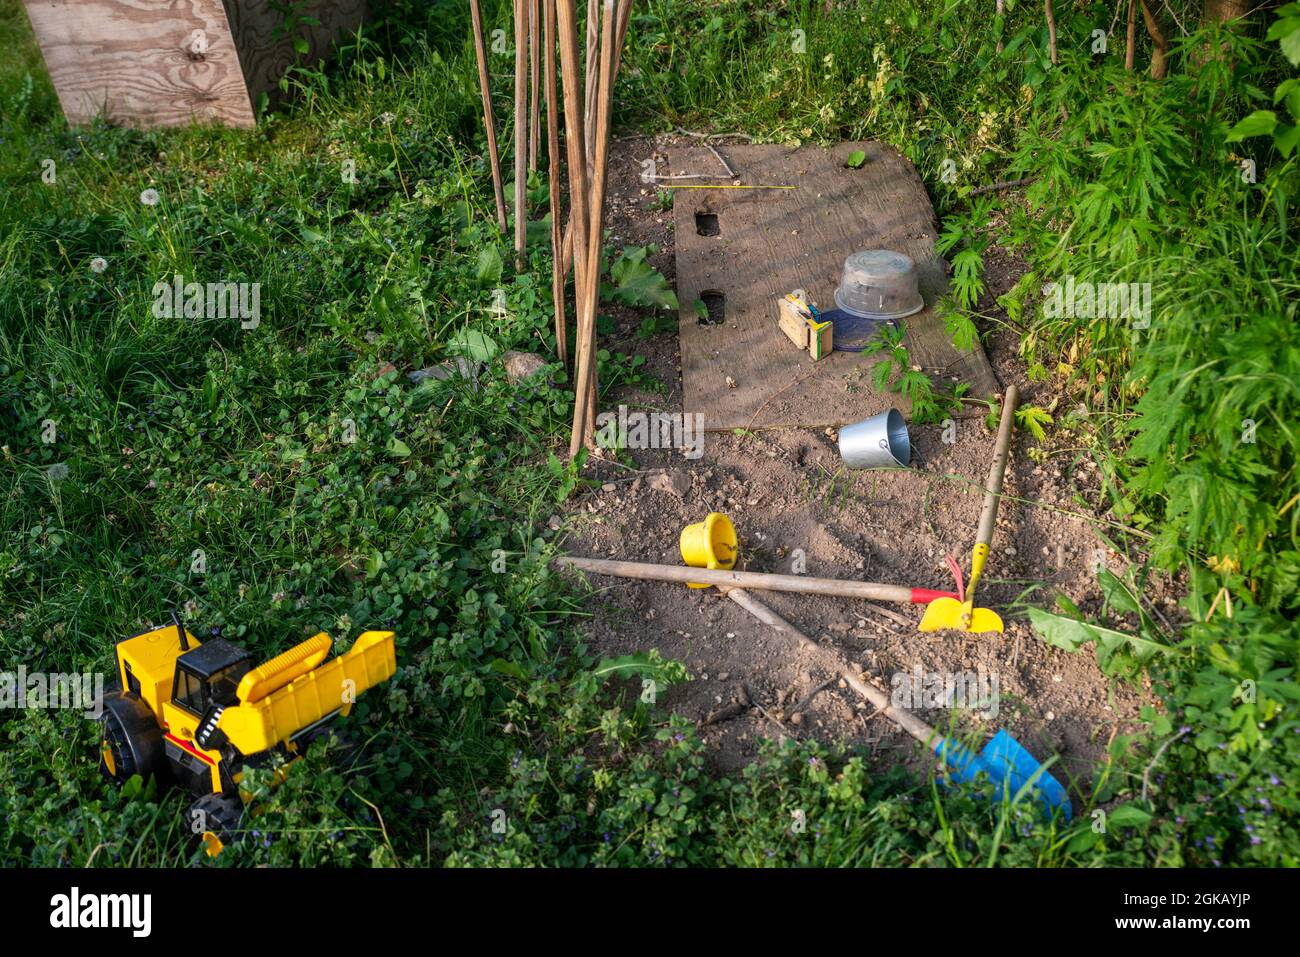 Jardin de jeu pour enfants avec camion et jouets vert herbe jaune terre Banque D'Images